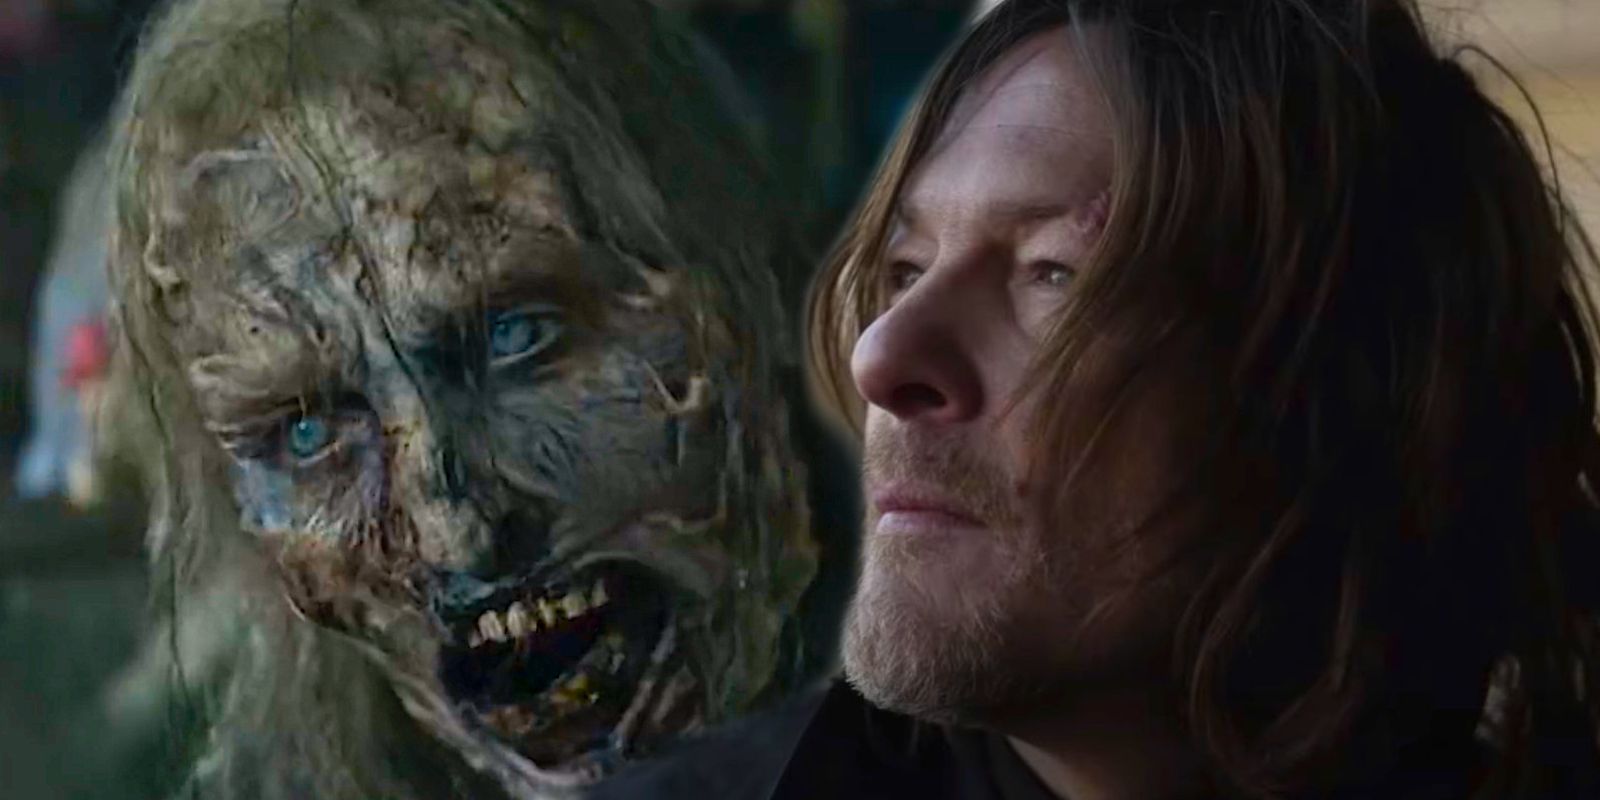 Benutzerdefiniertes Bild eines Burner-Zombies und Daryls, der in The Walking Dead Daryl Dixon nach oben schaut